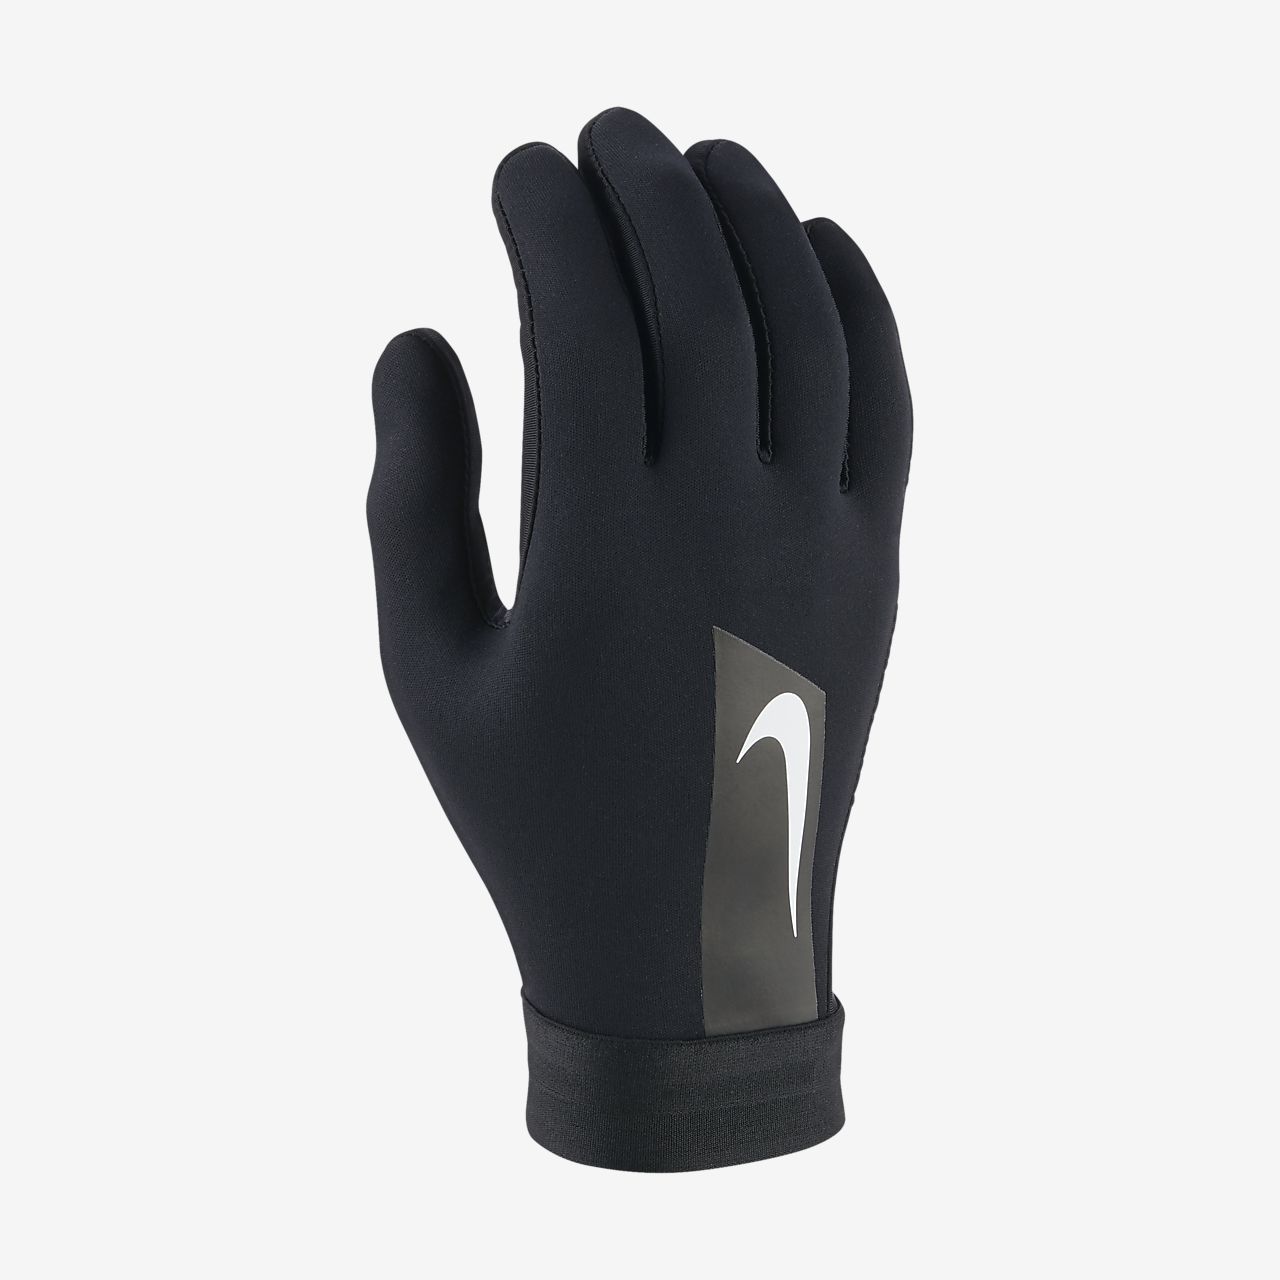 nike winter running gloves